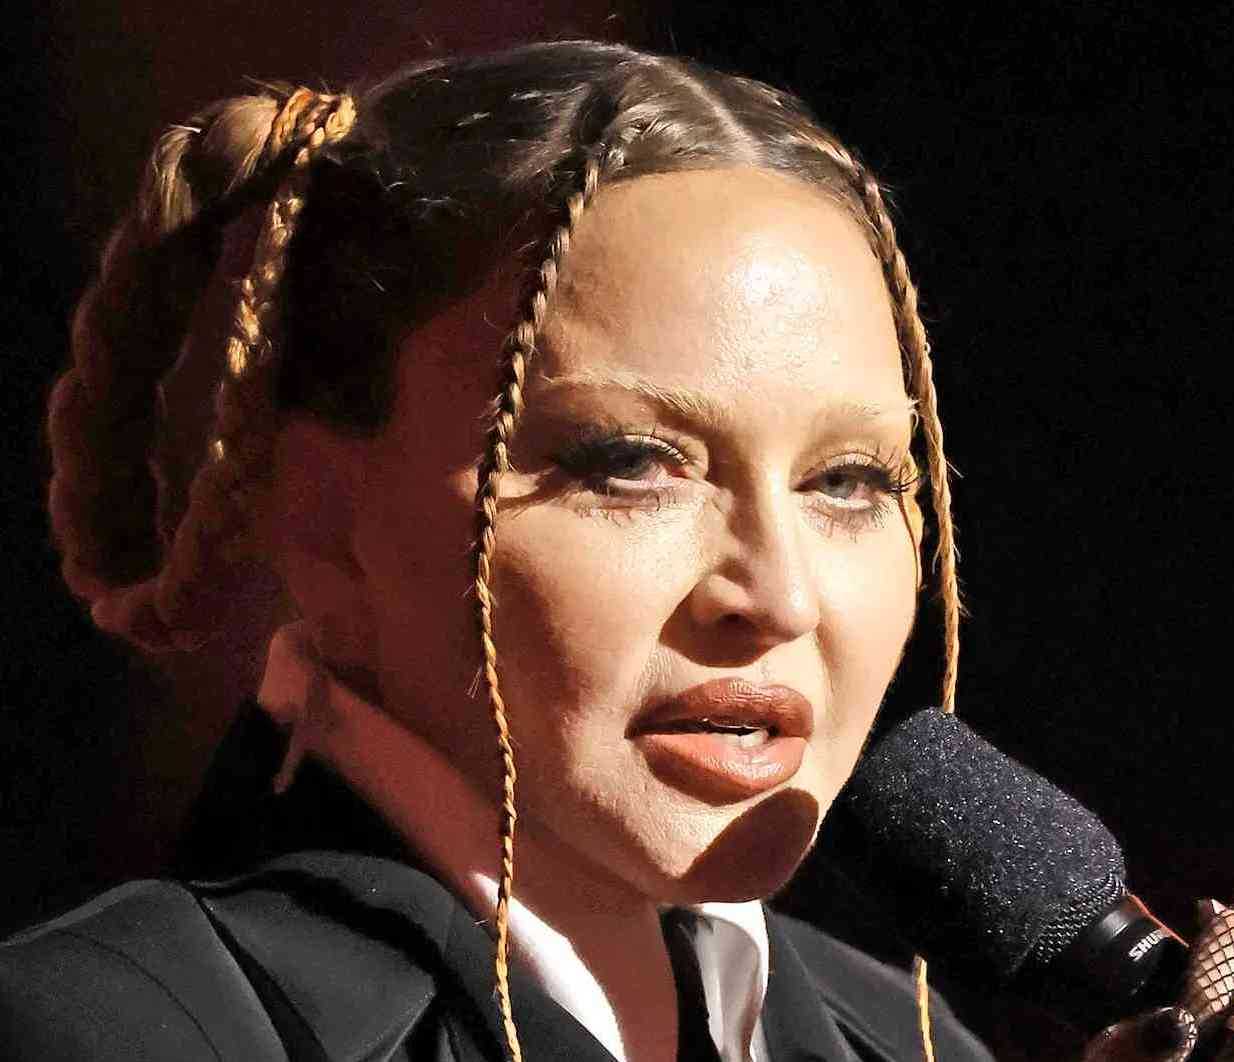 Madonna ai Grammy si presenta con il viso deformato fan preoccupati